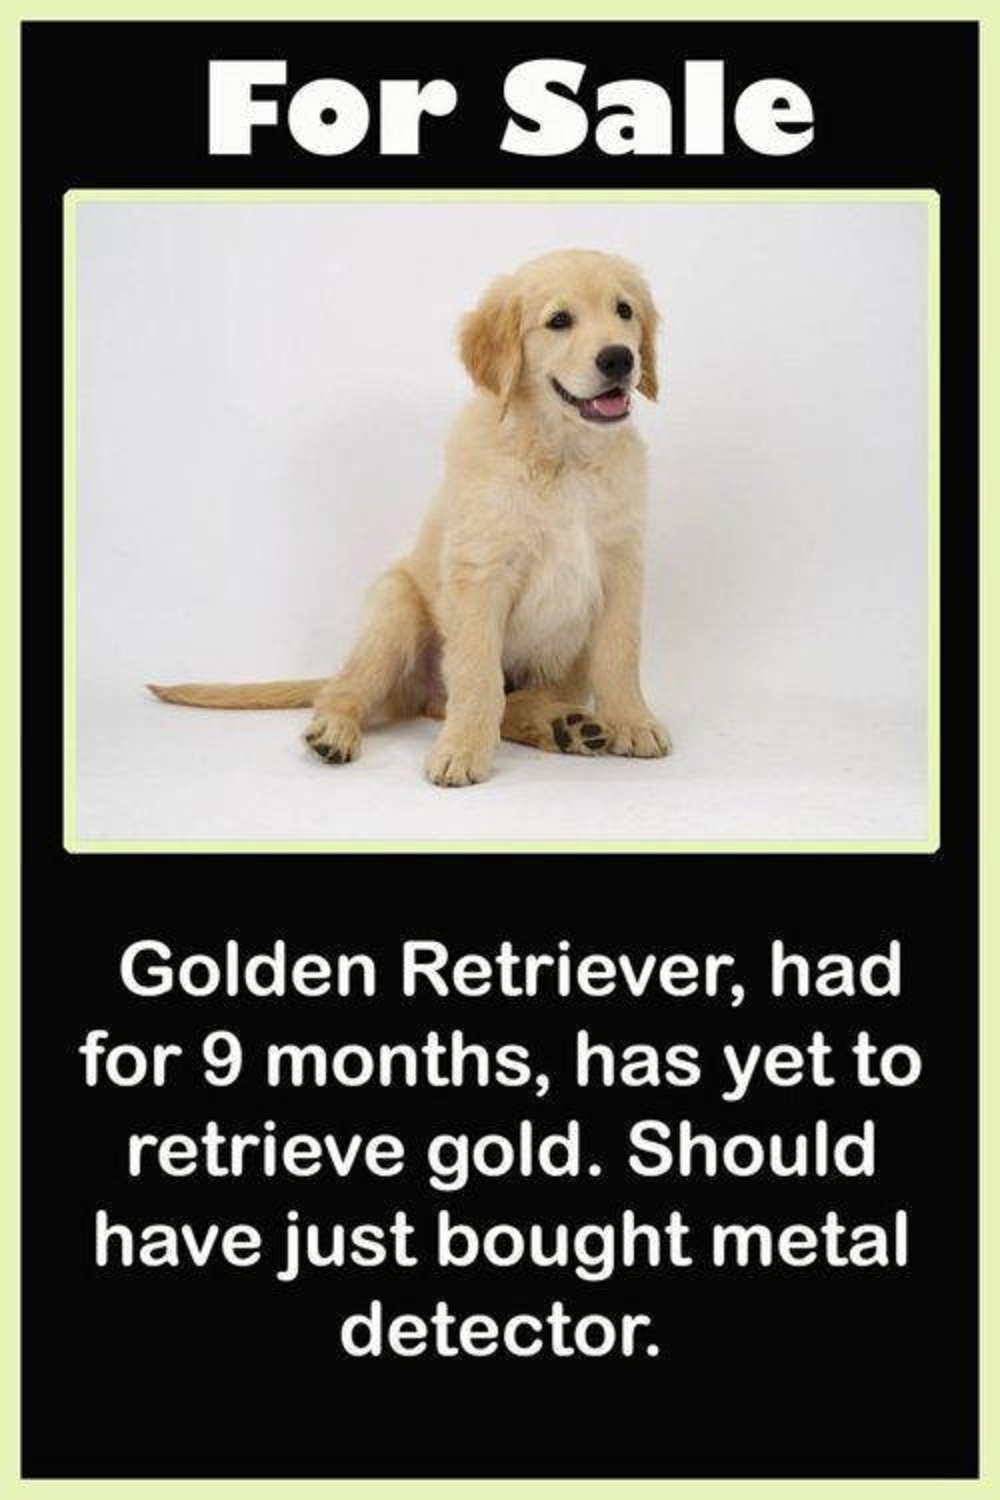 golden-retriever-for-sale.jpg